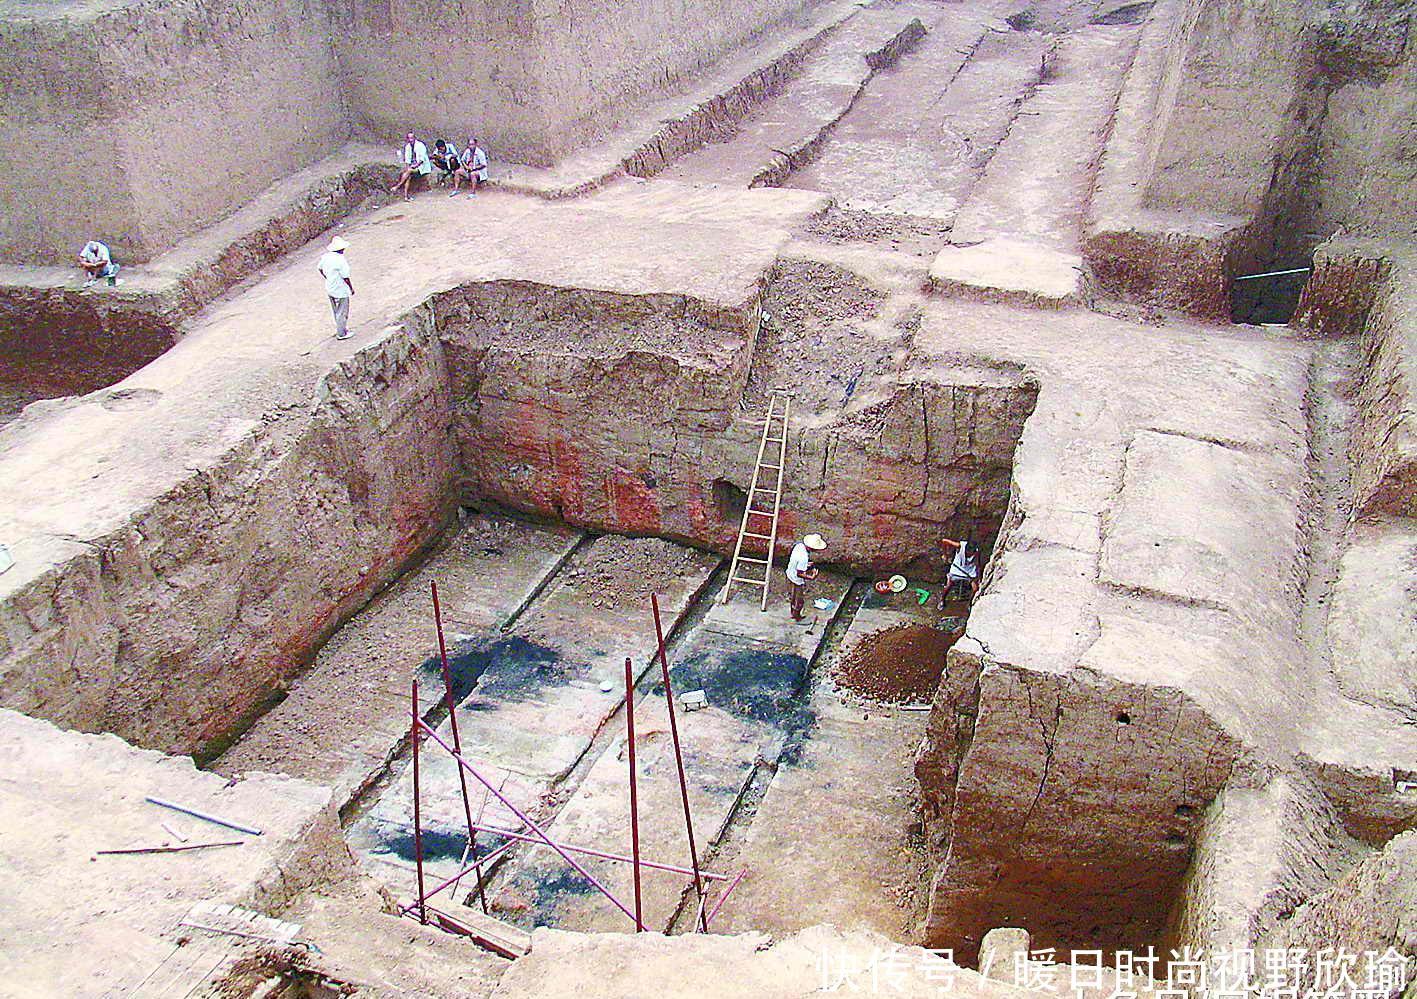 西安小山村发现17座荒坟,考古专家惊呼:埋葬的